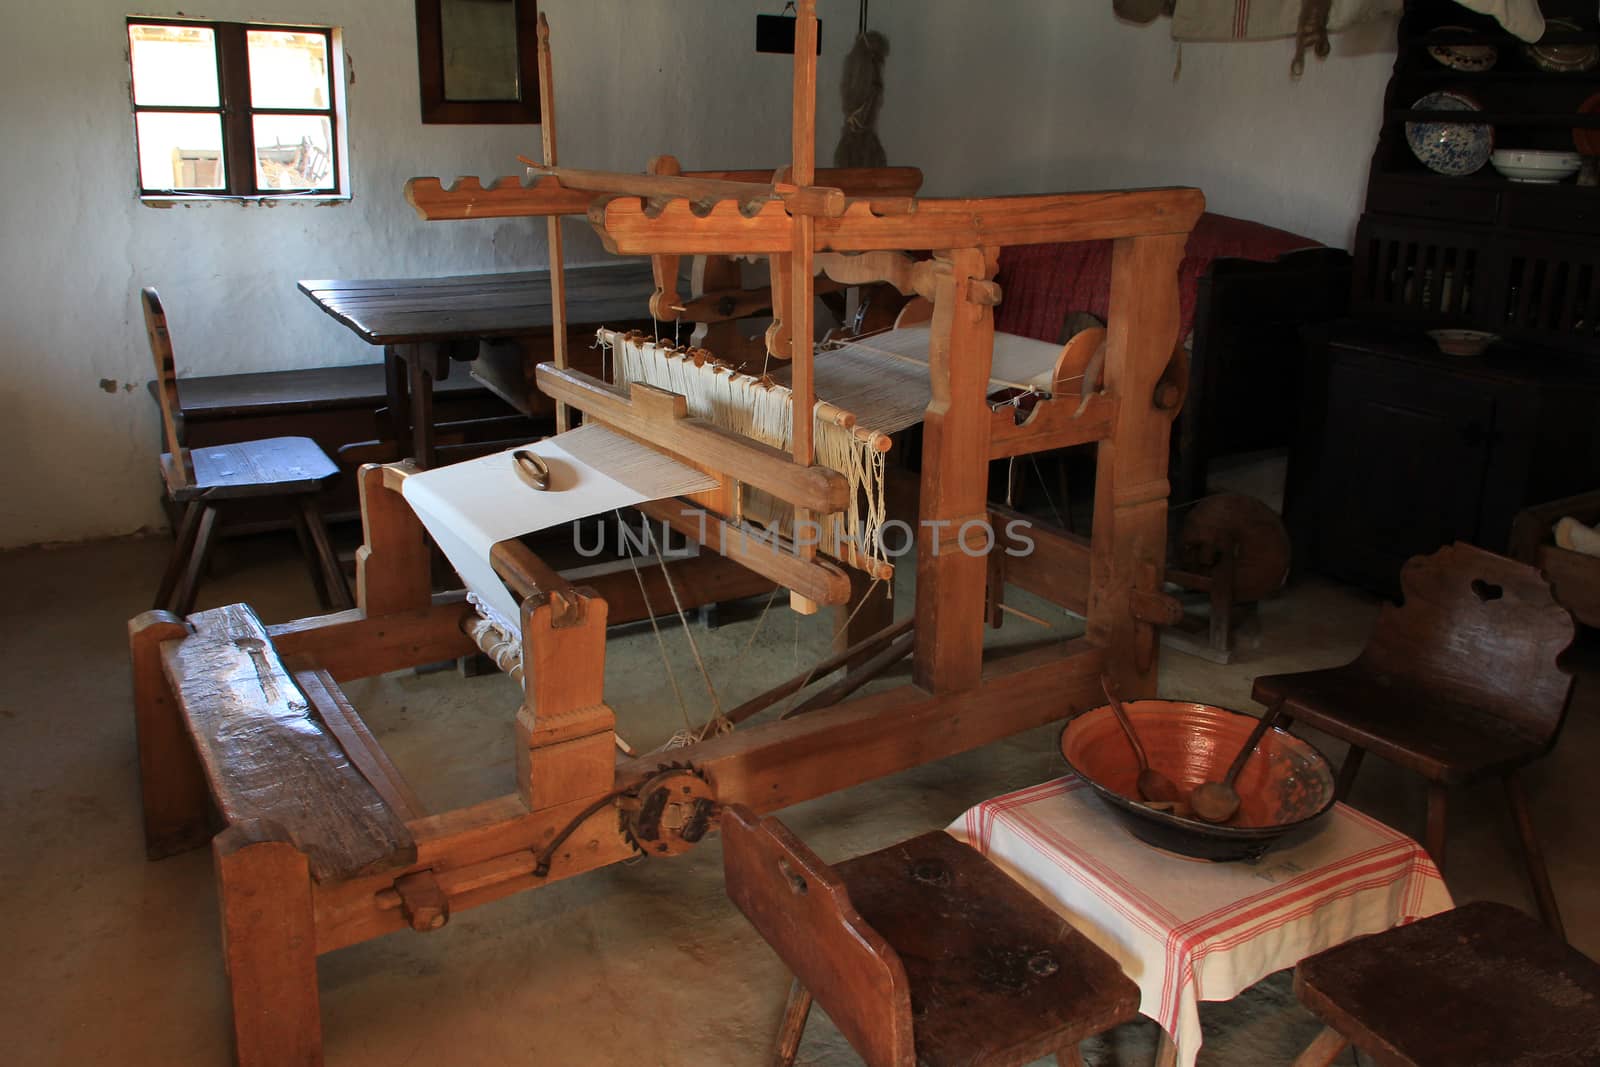 A rustic rural wooden loom room inside.